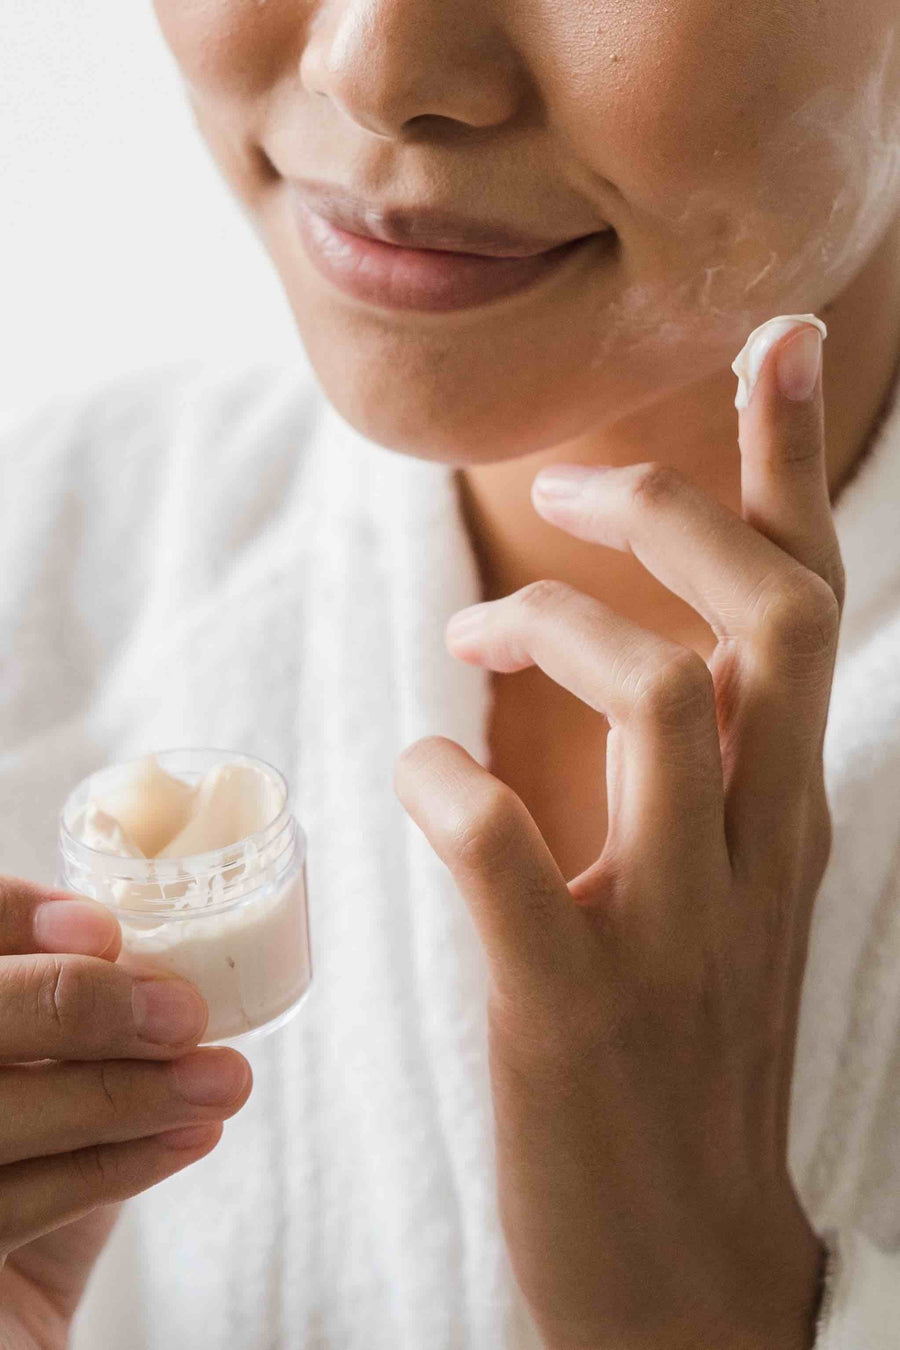 Comment une crème visage bio peut améliorer votre peau et votre santé globale